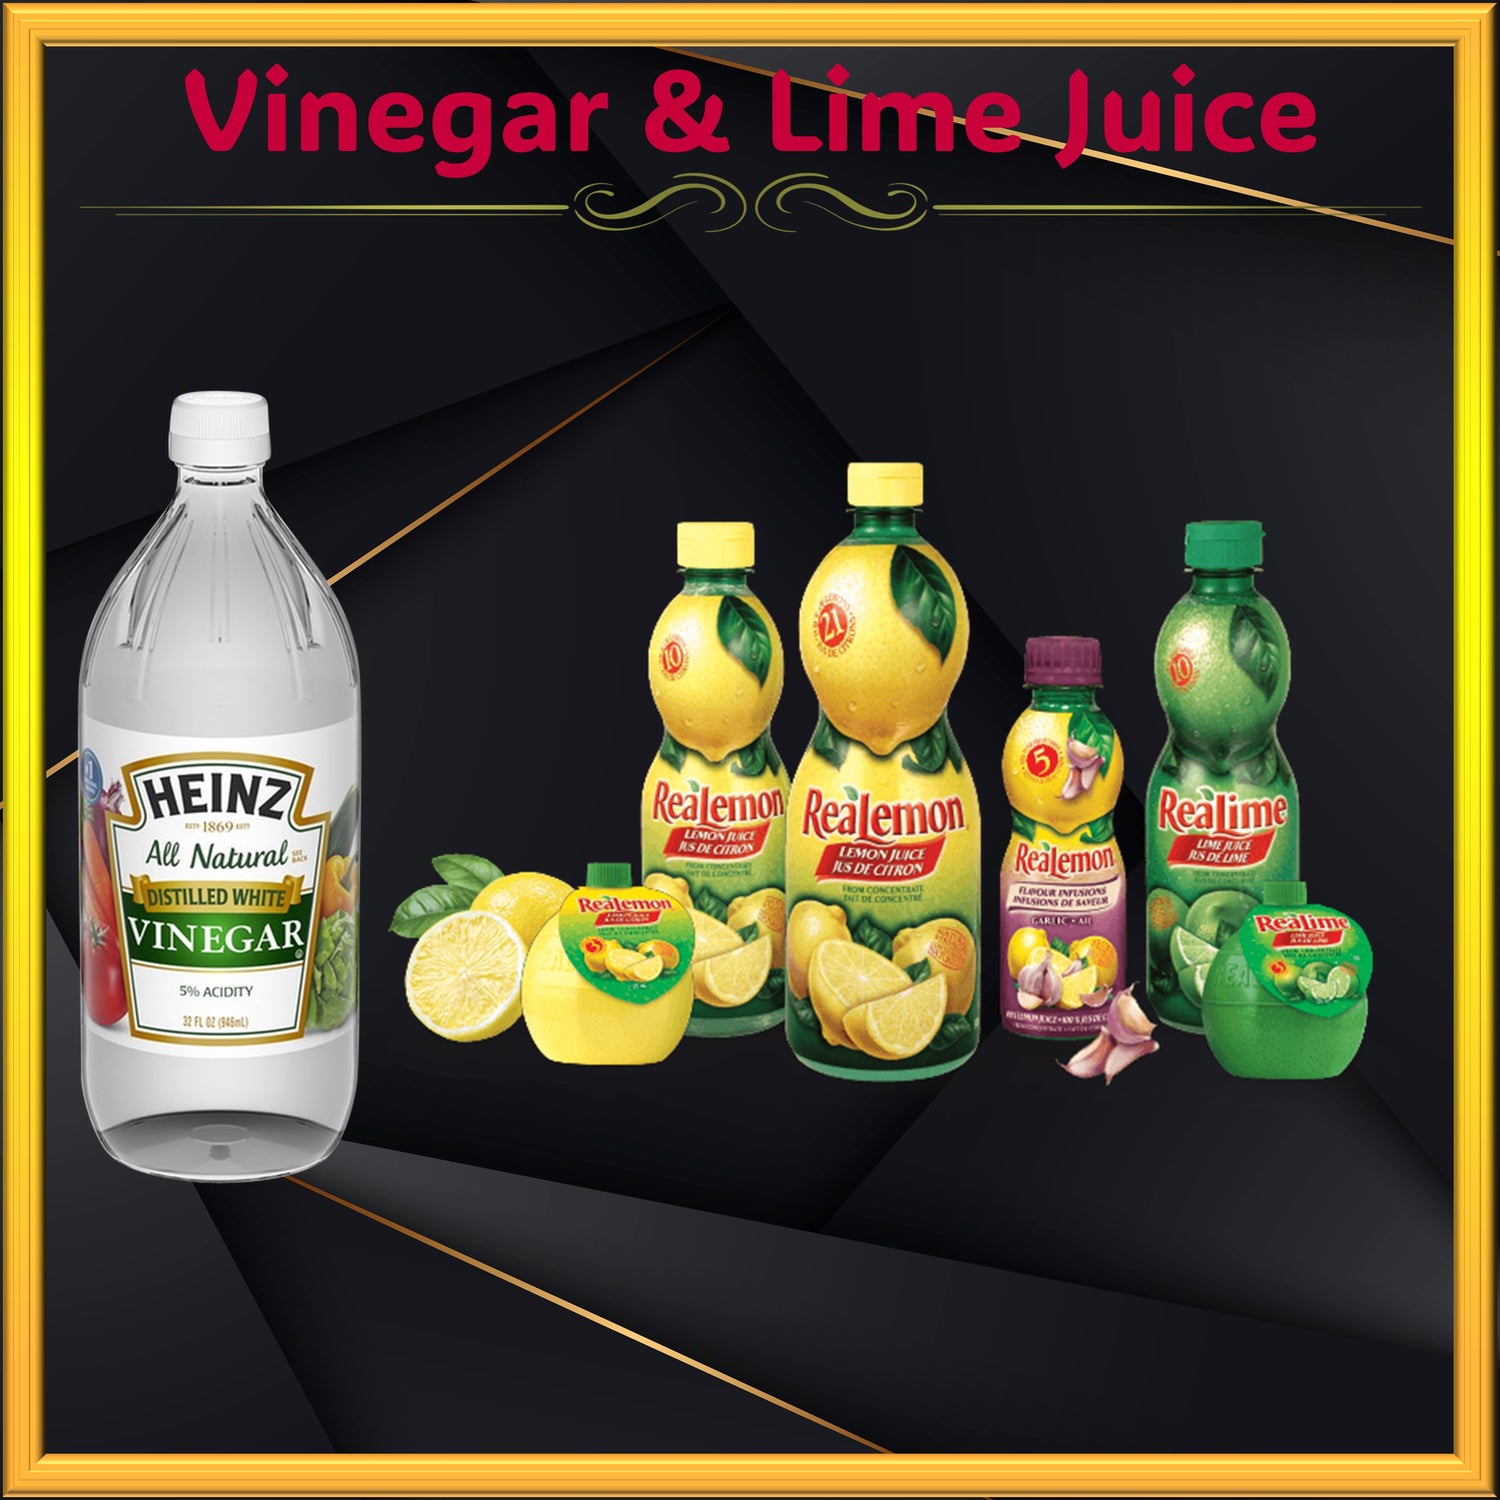 Vinegar & Lime Juice